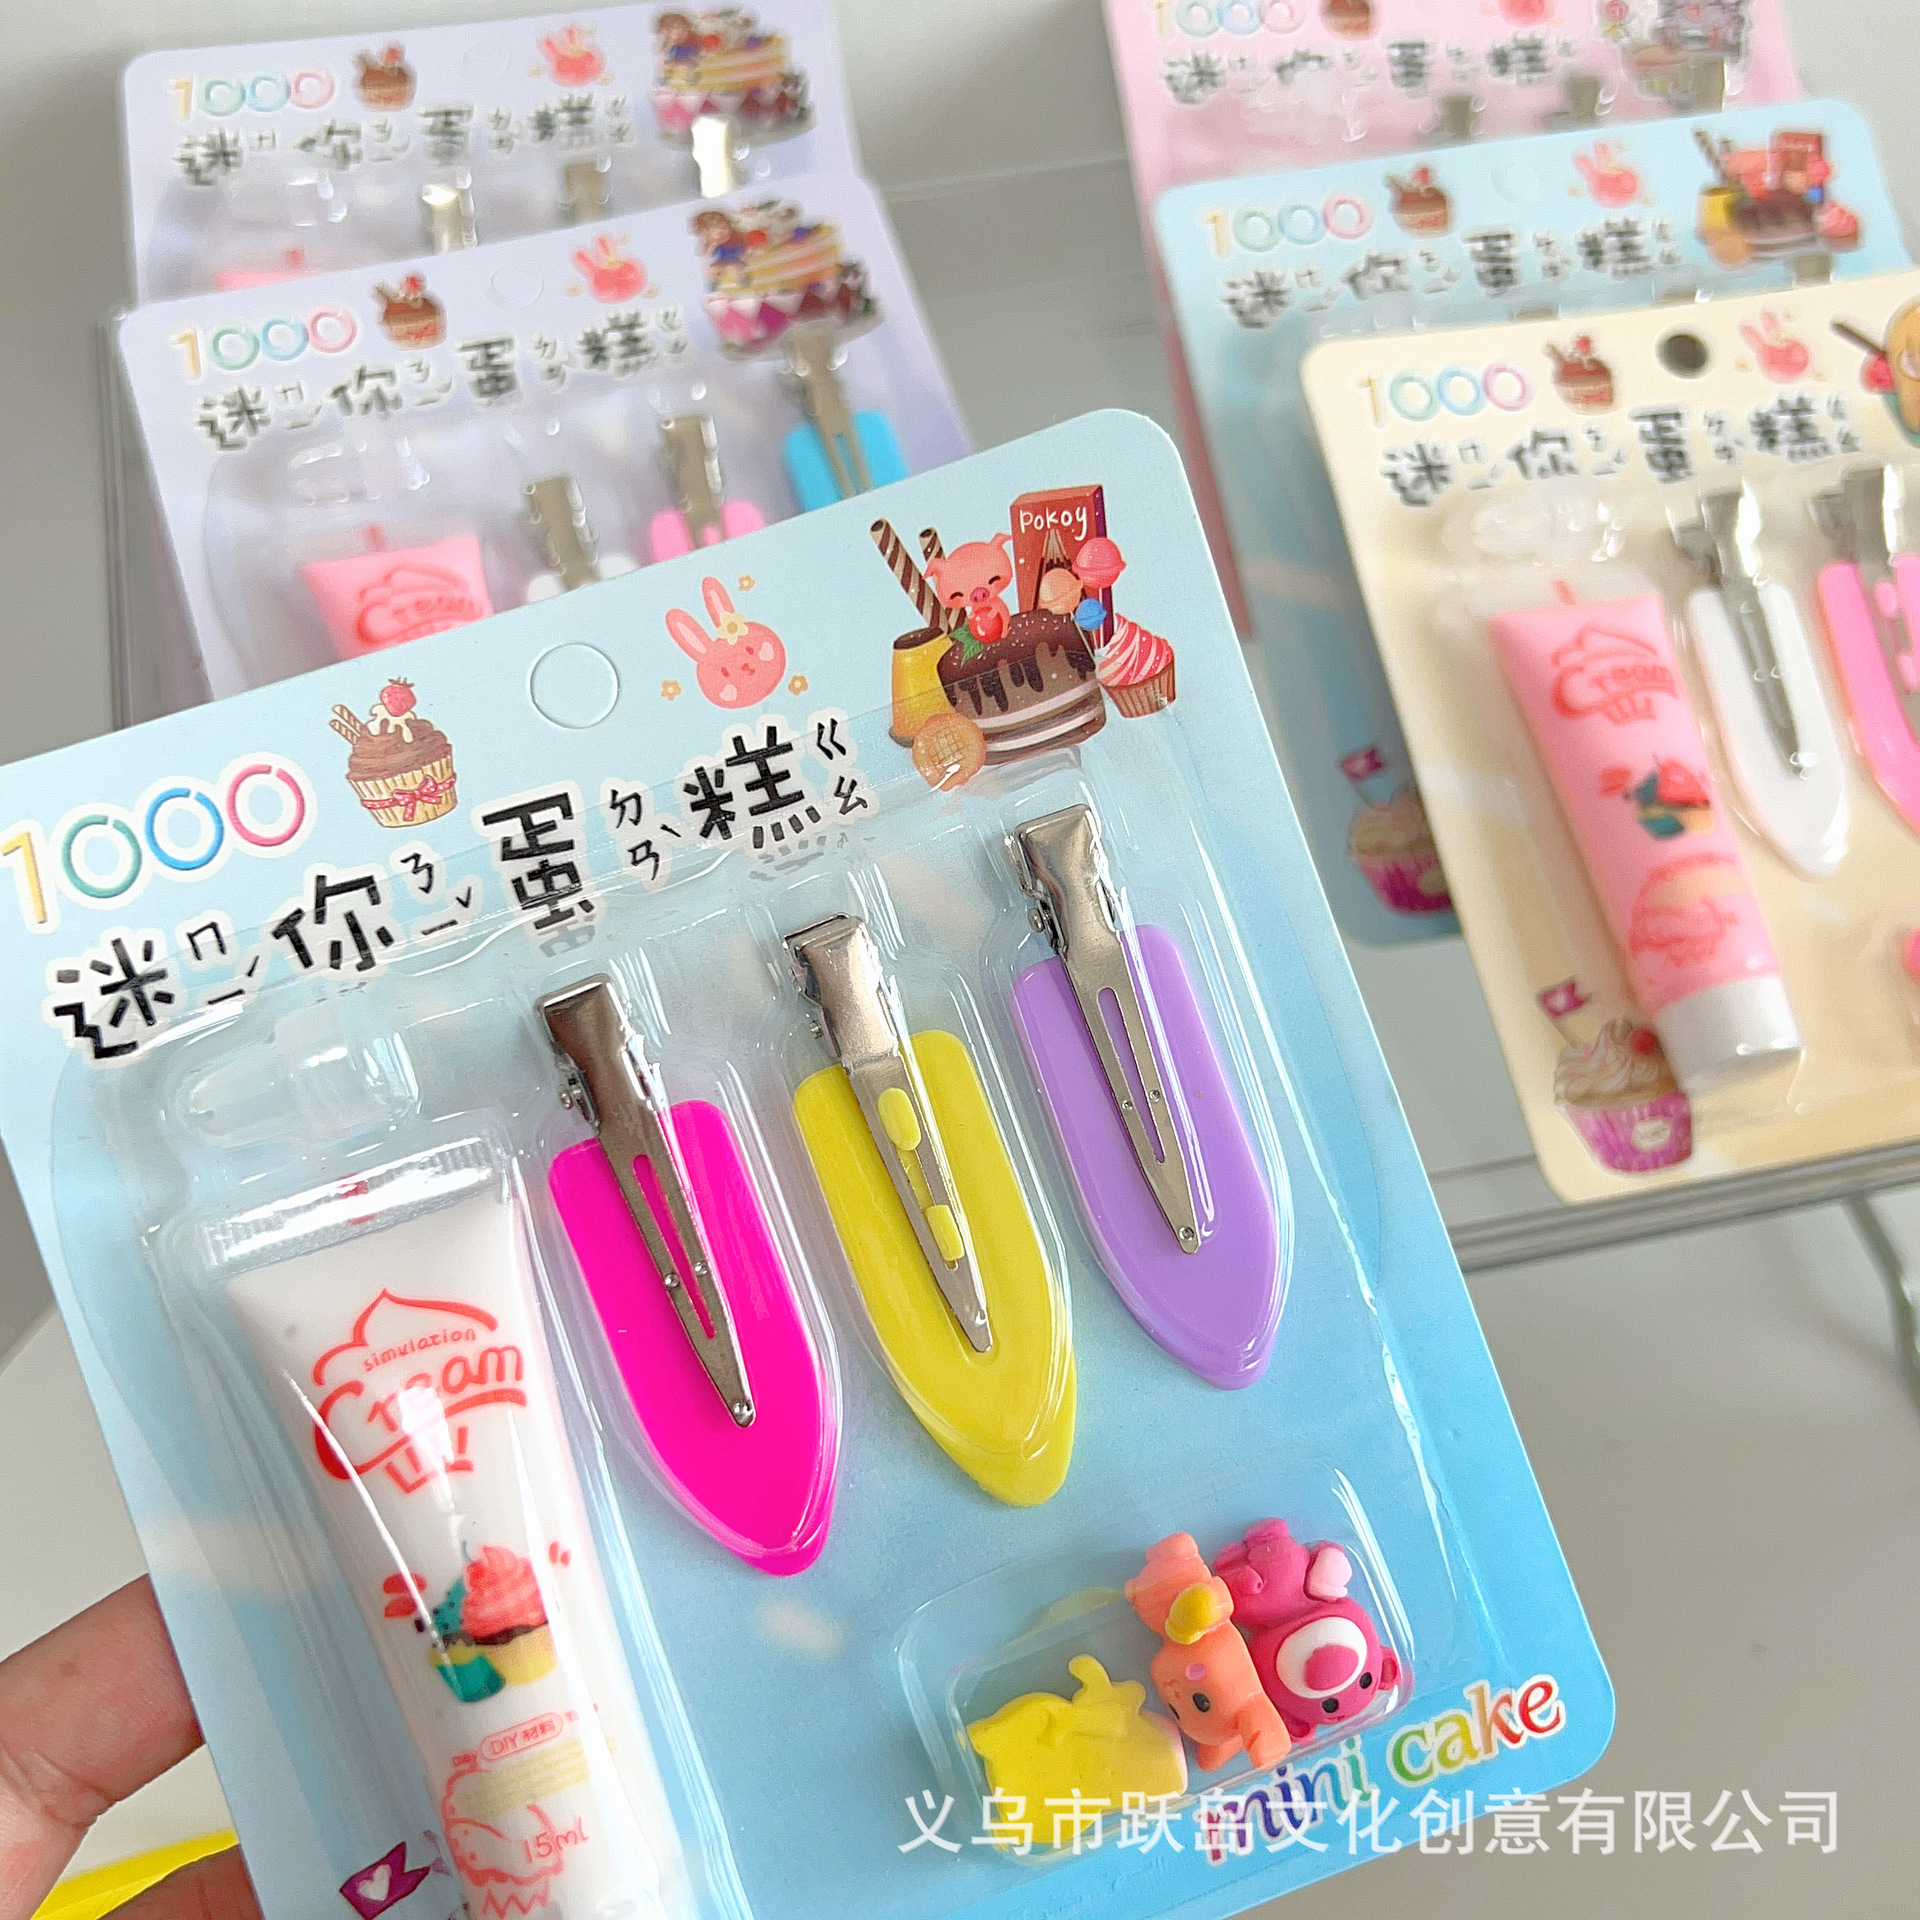 Cute Girl Cream Glue DIY Barrettes Resin Cartoon Material Package Handmade Hairpin Hair Ornaments Accessories Set